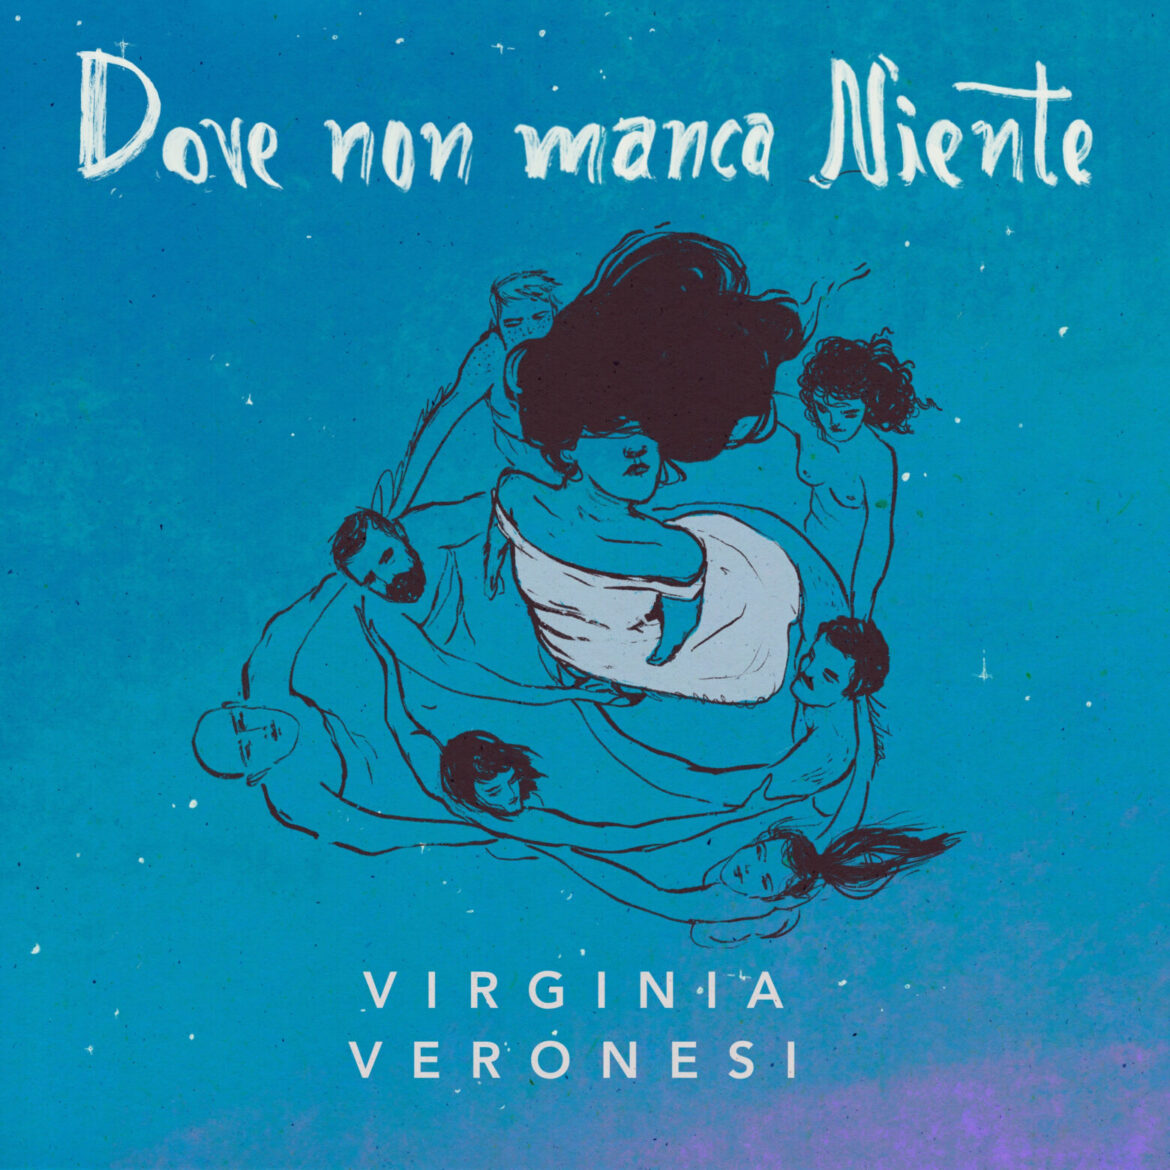 VIRGINIA VERONESI: esce il 17 settembre il nuovo singolo “DOVE NON MANCA NIENTE”